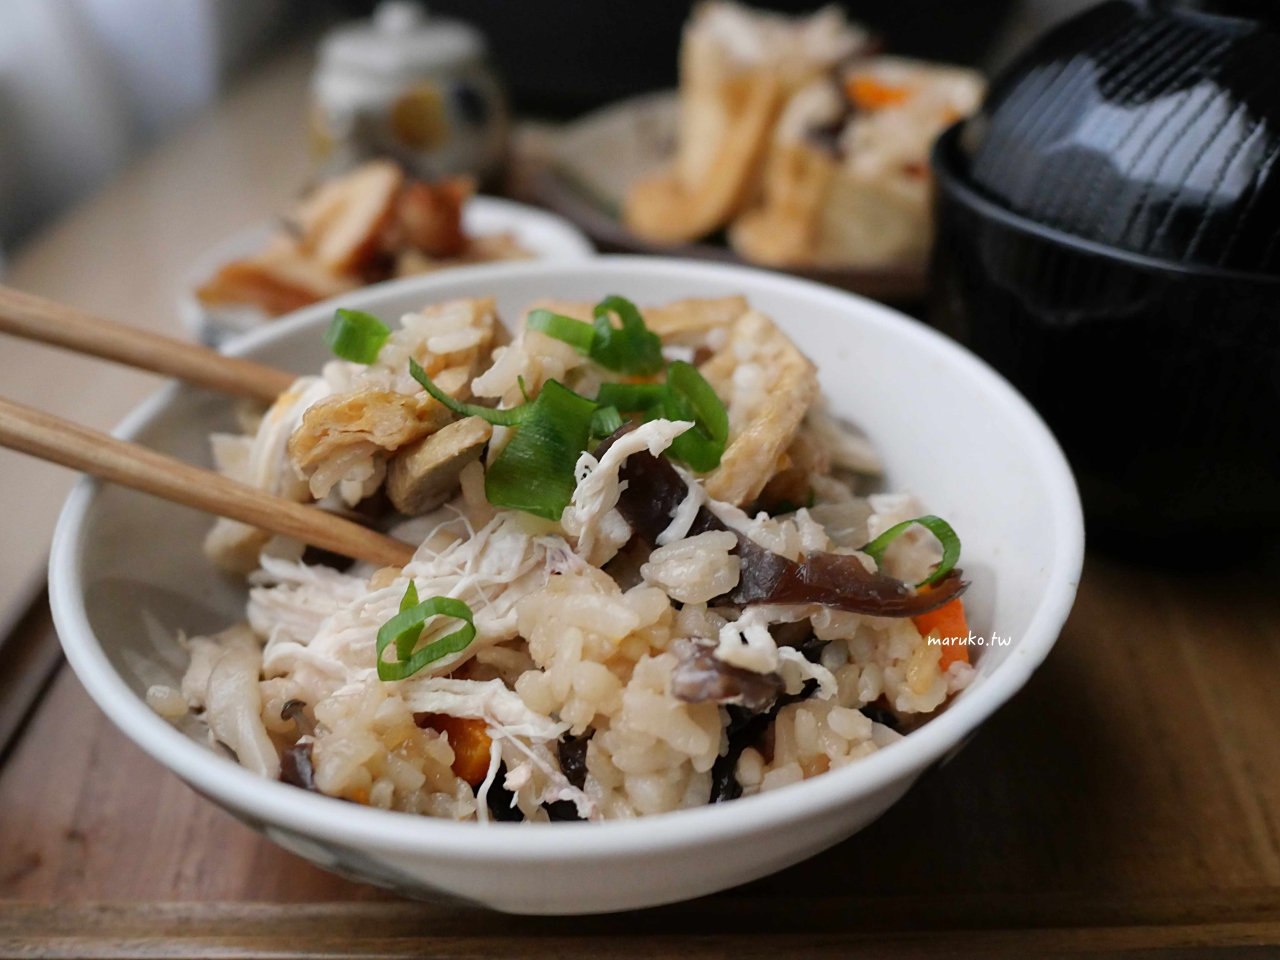 【電子鍋食譜】五目炊飯 一鍋三菜醬香的日式炊飯，米飯料理簡單上桌！